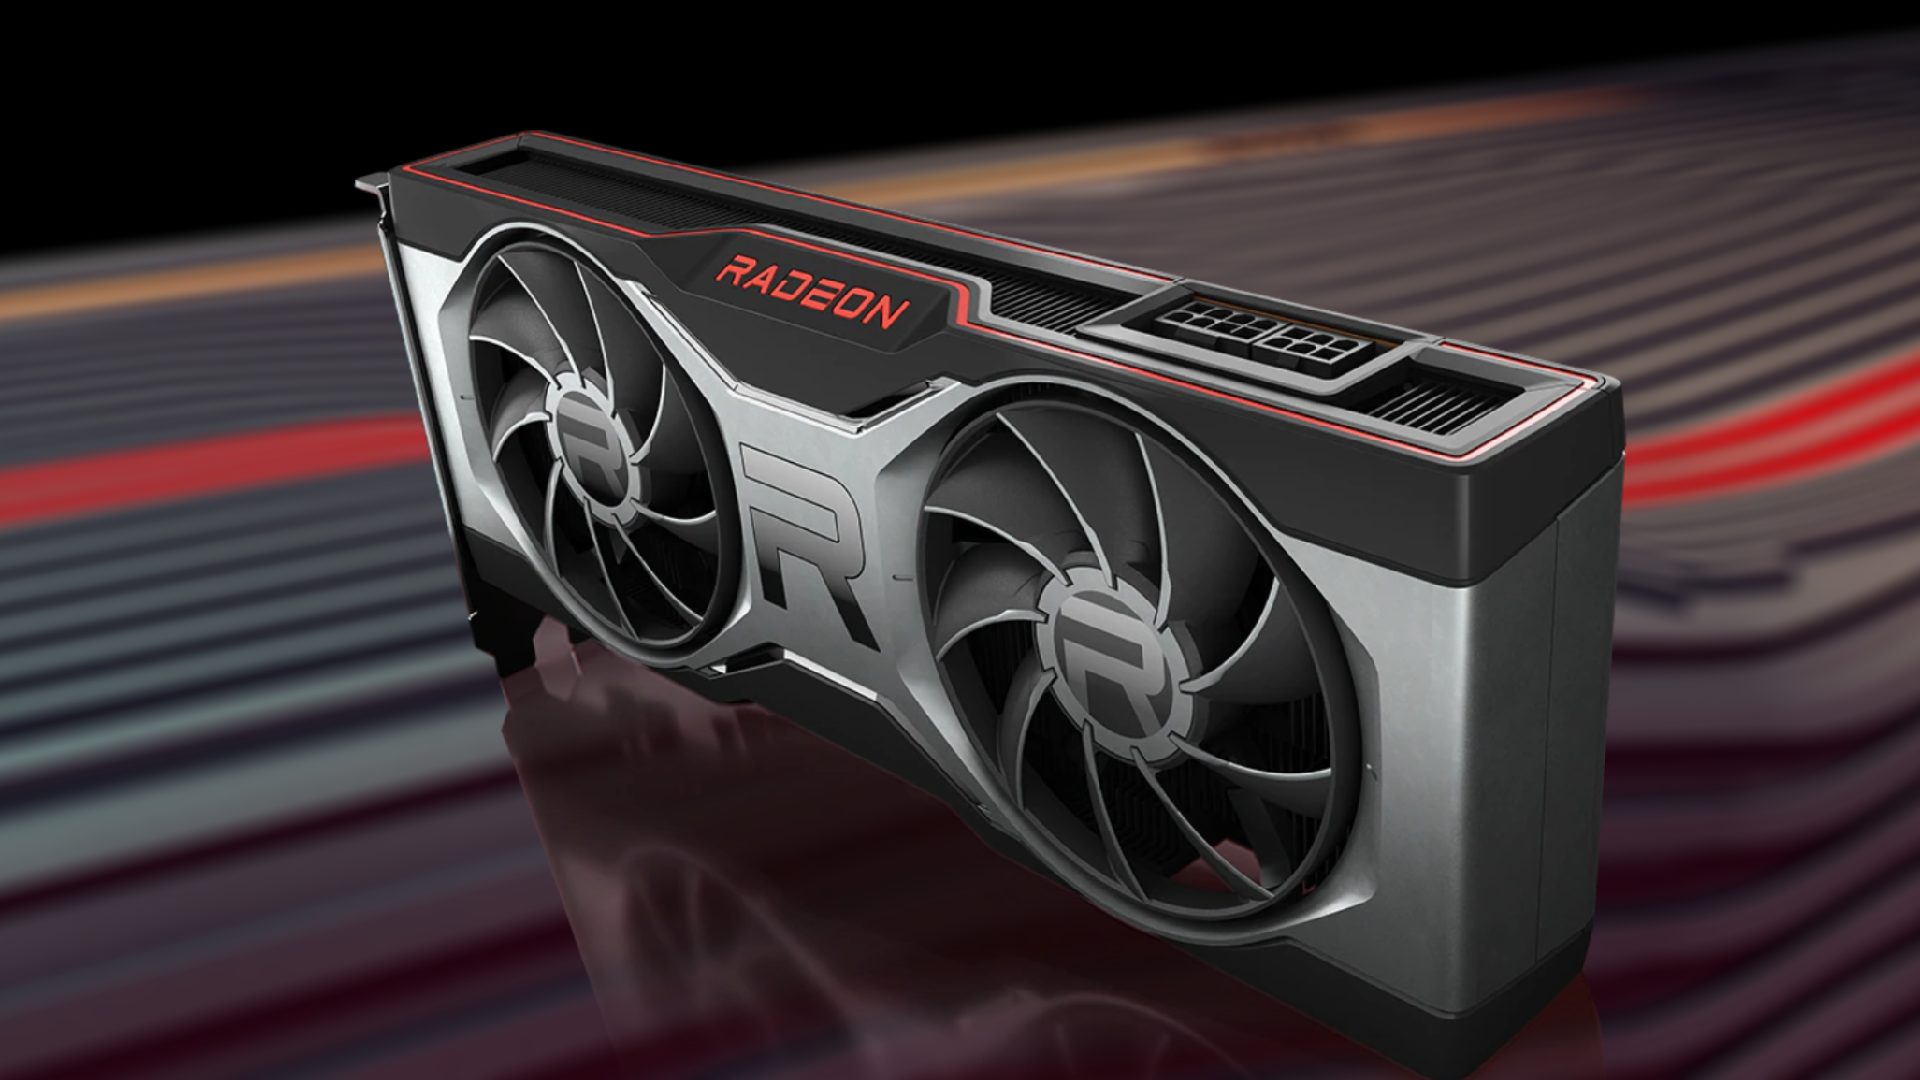 Radeon RX 7900 XTX Grafikkarten erhitzen sich auf bis zu 110 Grad. Aber AMD versichert, dass dies normal ist